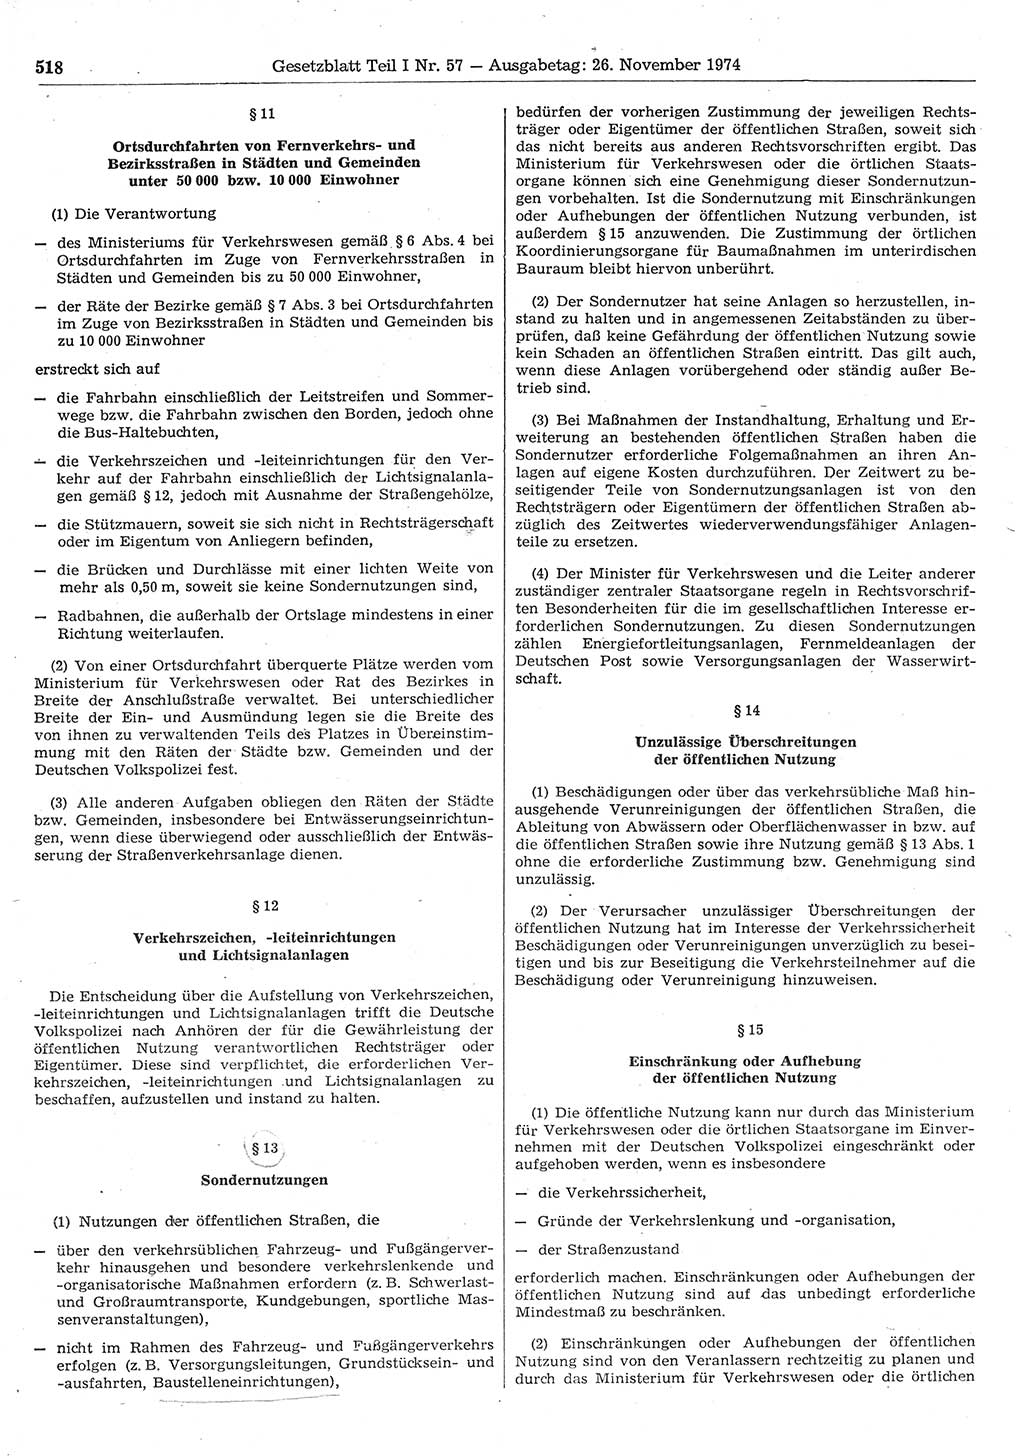 Gesetzblatt (GBl.) der Deutschen Demokratischen Republik (DDR) Teil Ⅰ 1974, Seite 518 (GBl. DDR Ⅰ 1974, S. 518)